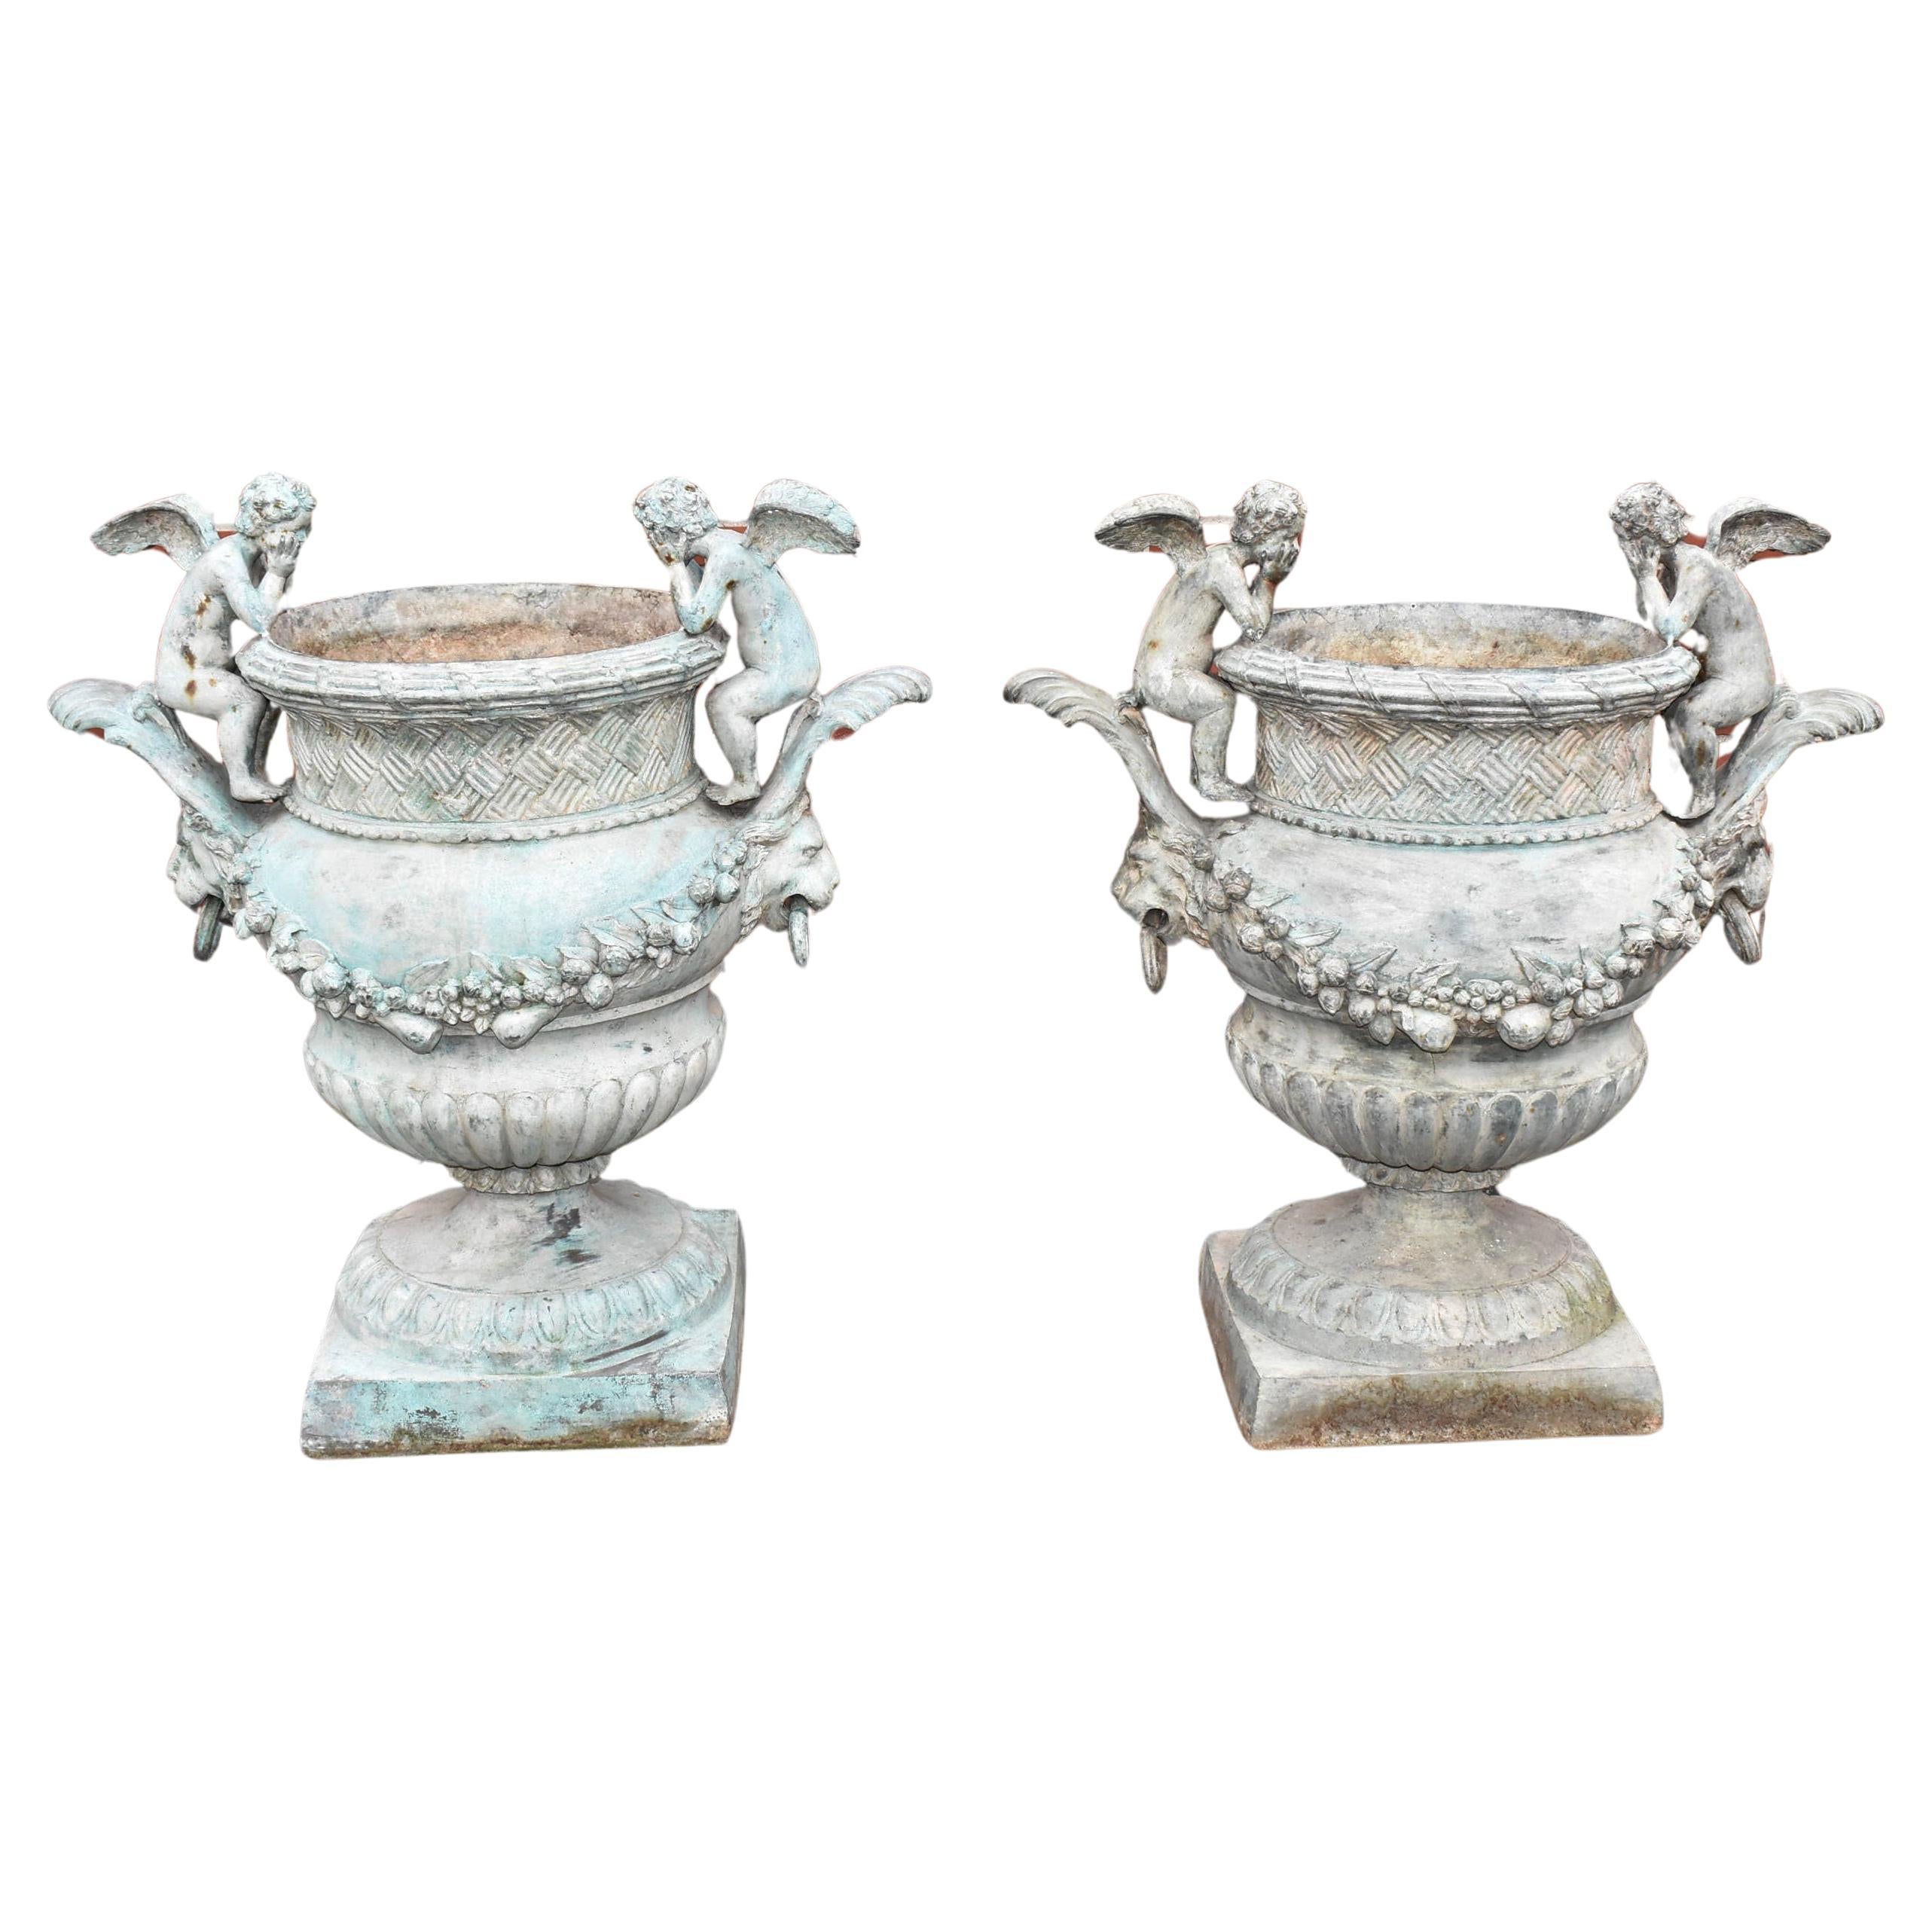 Pair of Bronze Outdoor Urns with Winged Cherubs